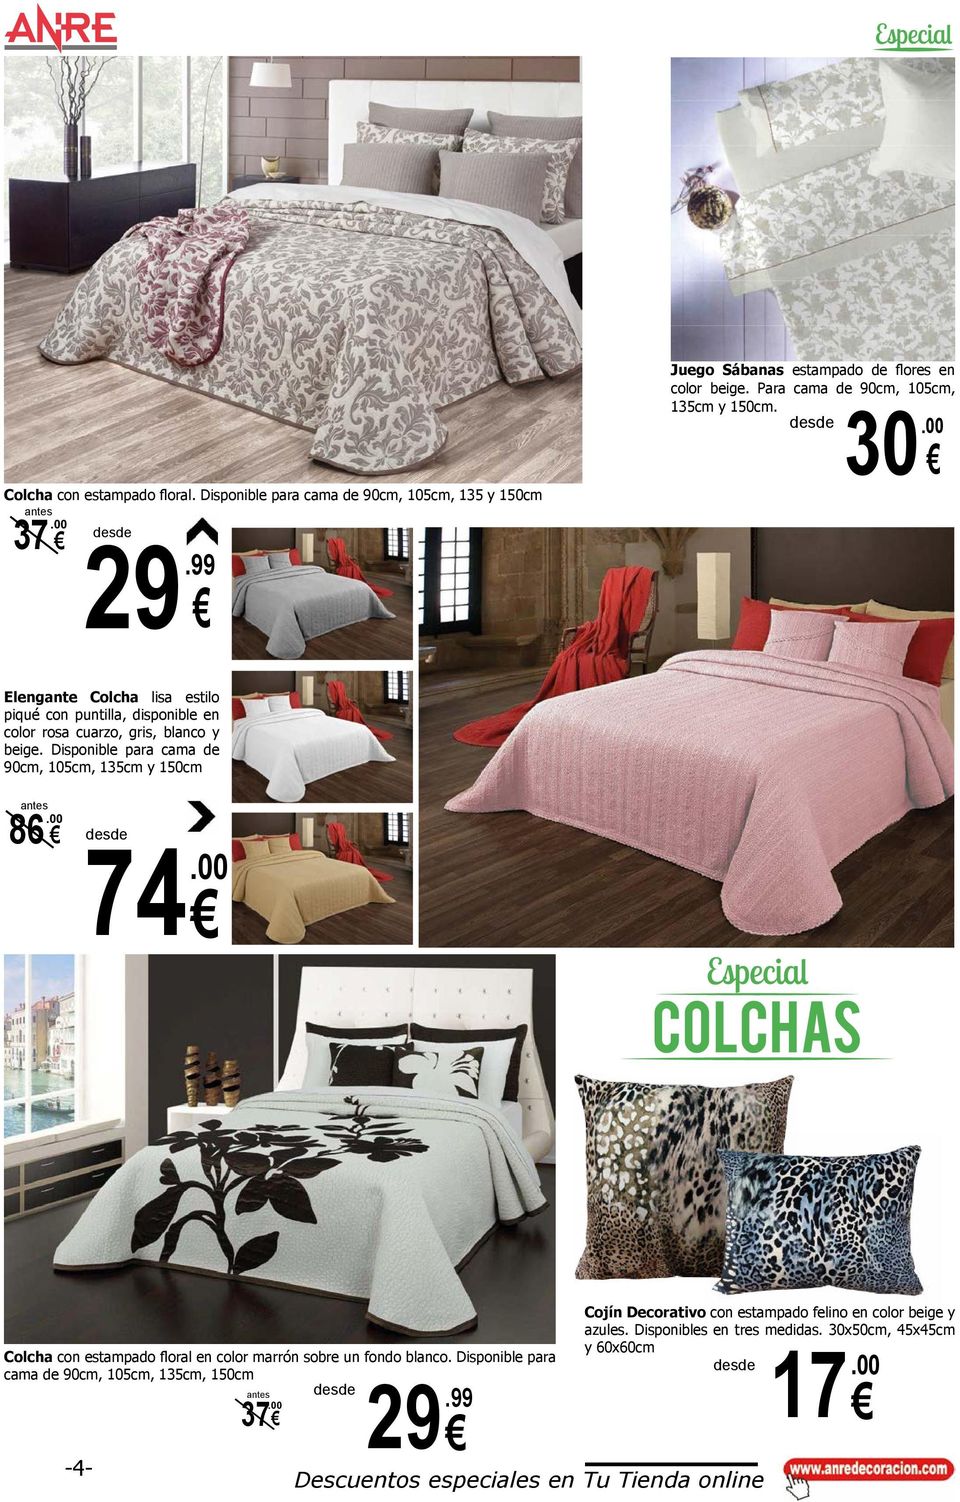 00 Elengante Colcha lisa estilo piqué con puntilla, disponible en color rosa cuarzo, gris, blanco y beige.